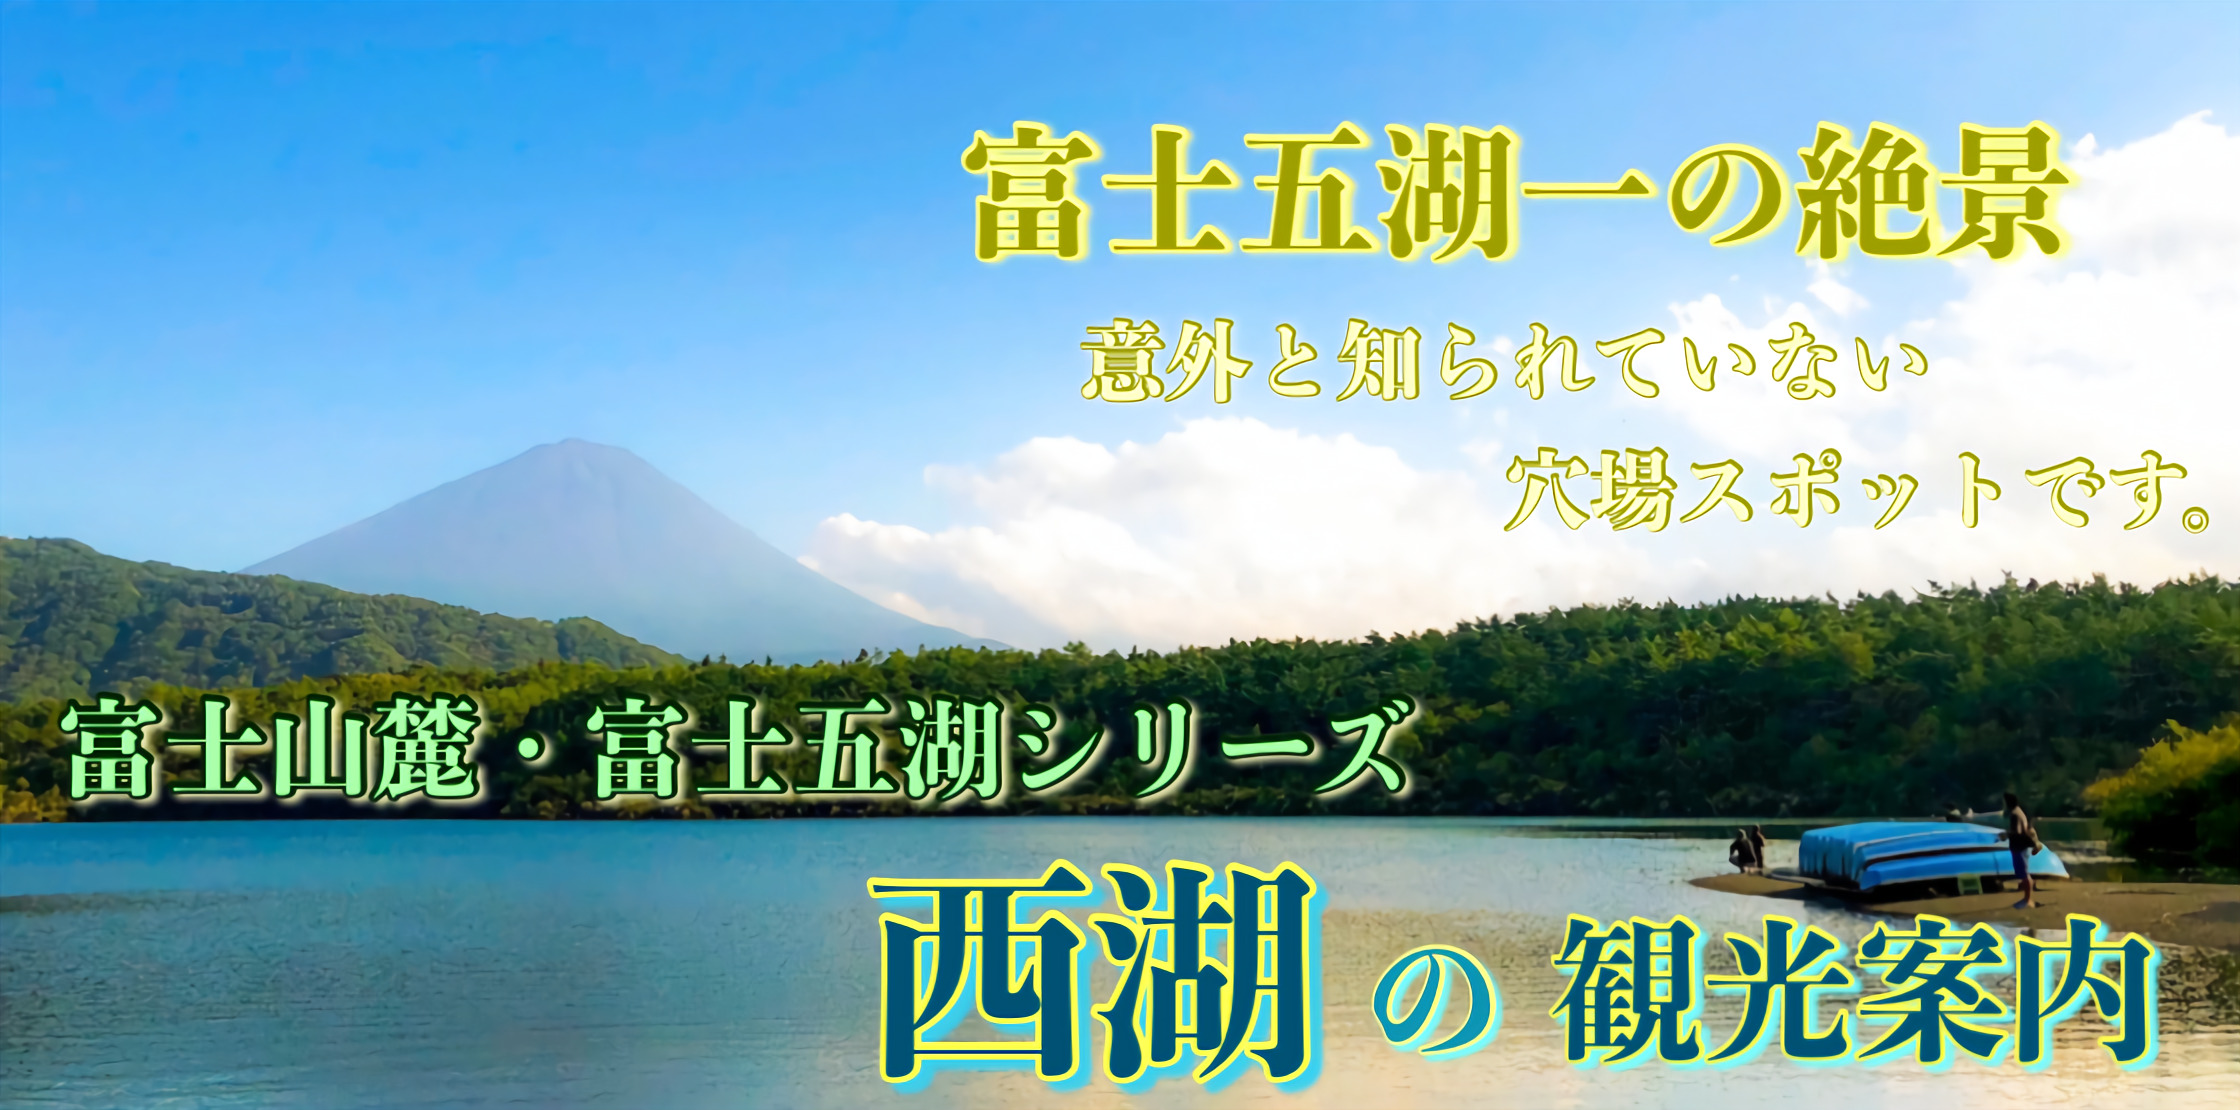 富士五湖21 西湖の観光案内 富士山の自然を楽しむならココ これぞ The穴場名所です 旅狼 たびろう どっとこむ